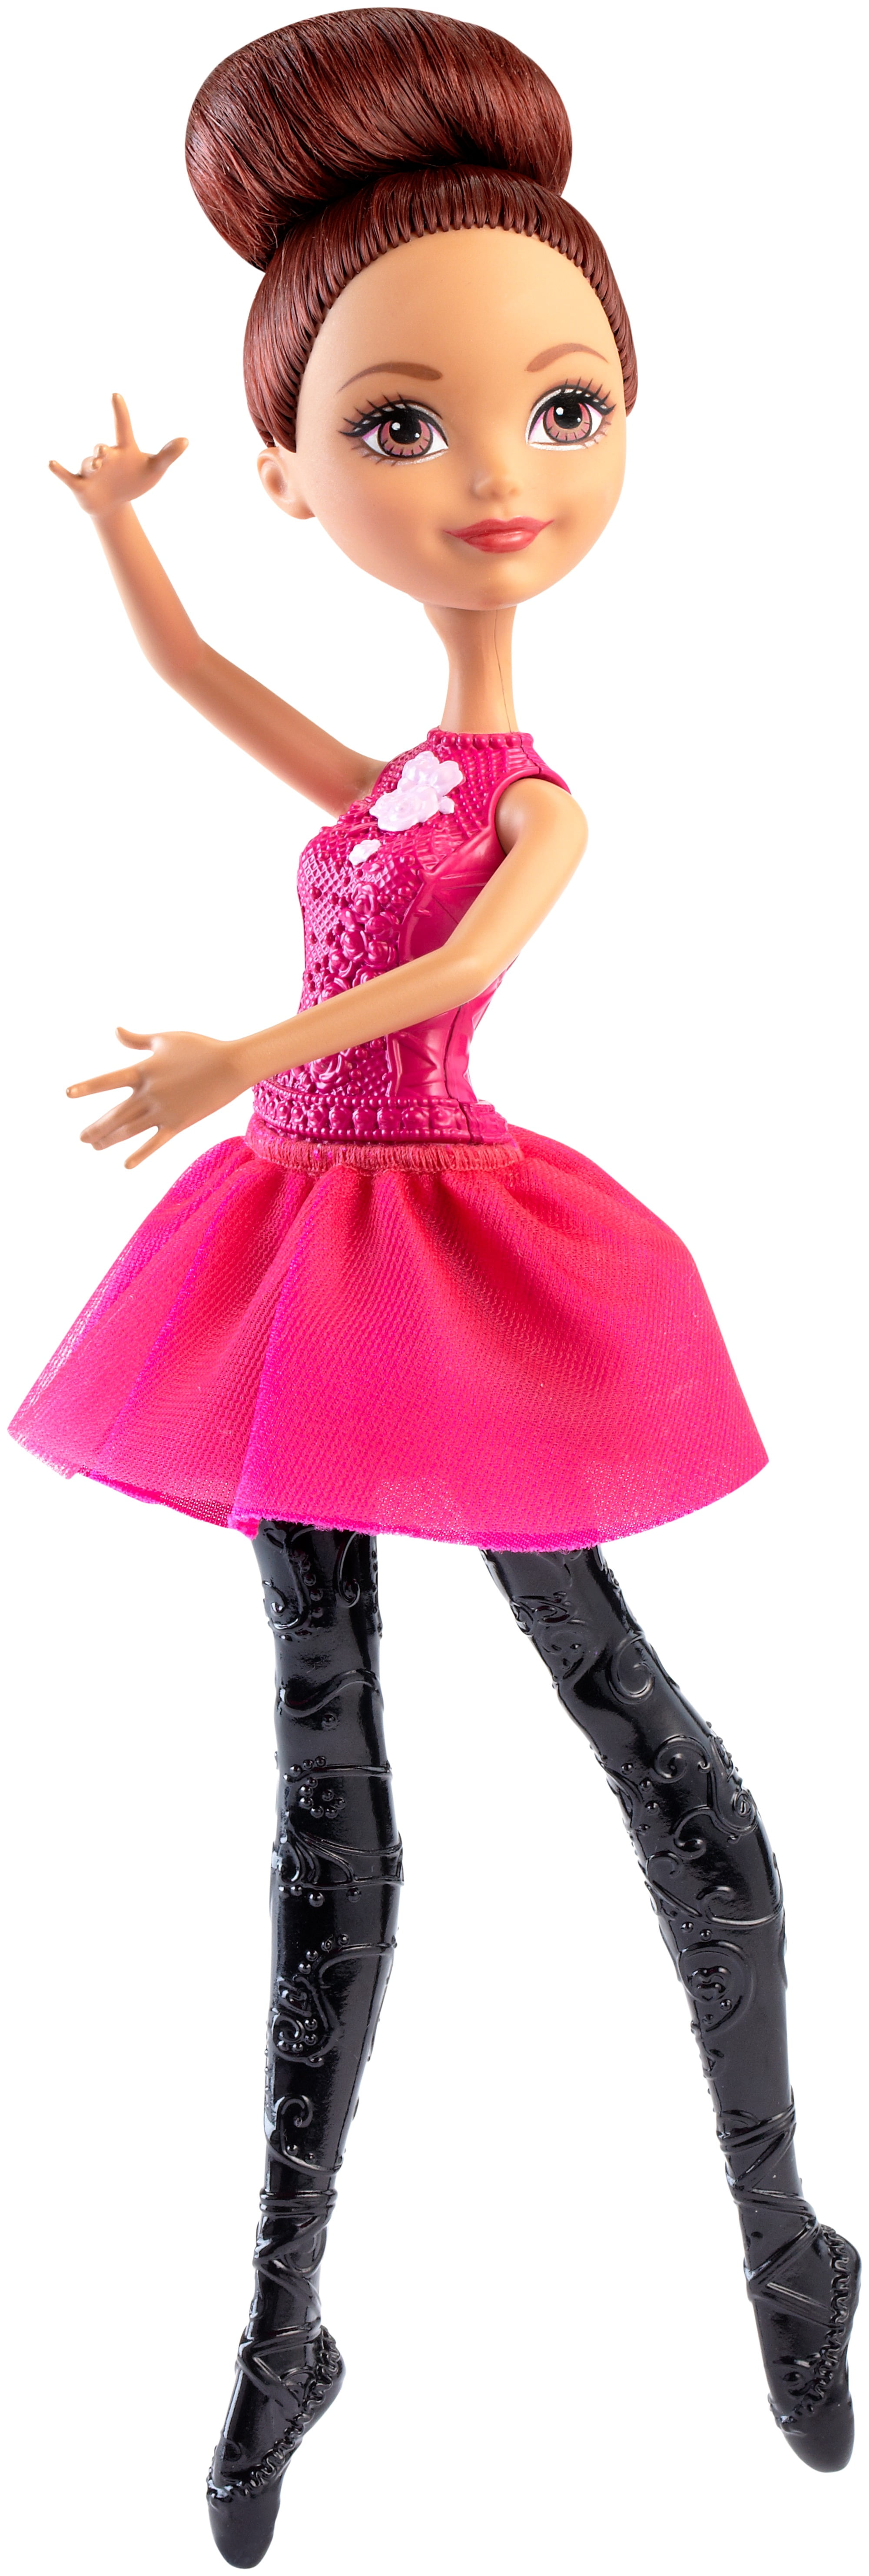 Ever After Ballet Briar Beauty Doll - Walmart.com